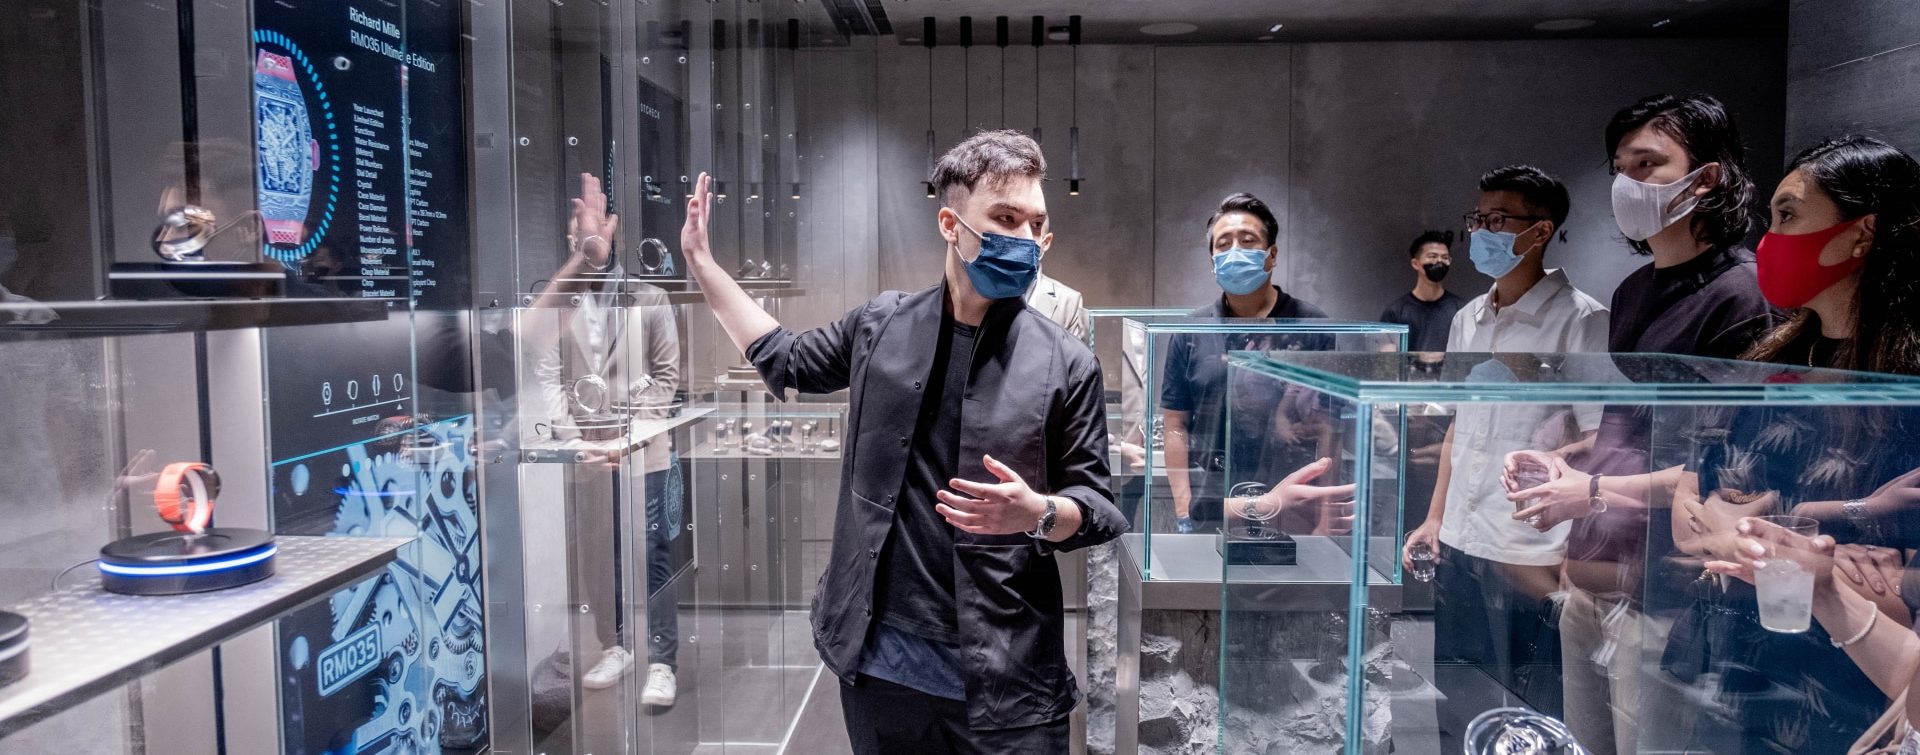 Wristcheck Experience Hong Kong - Garamantis develops interactive shop window